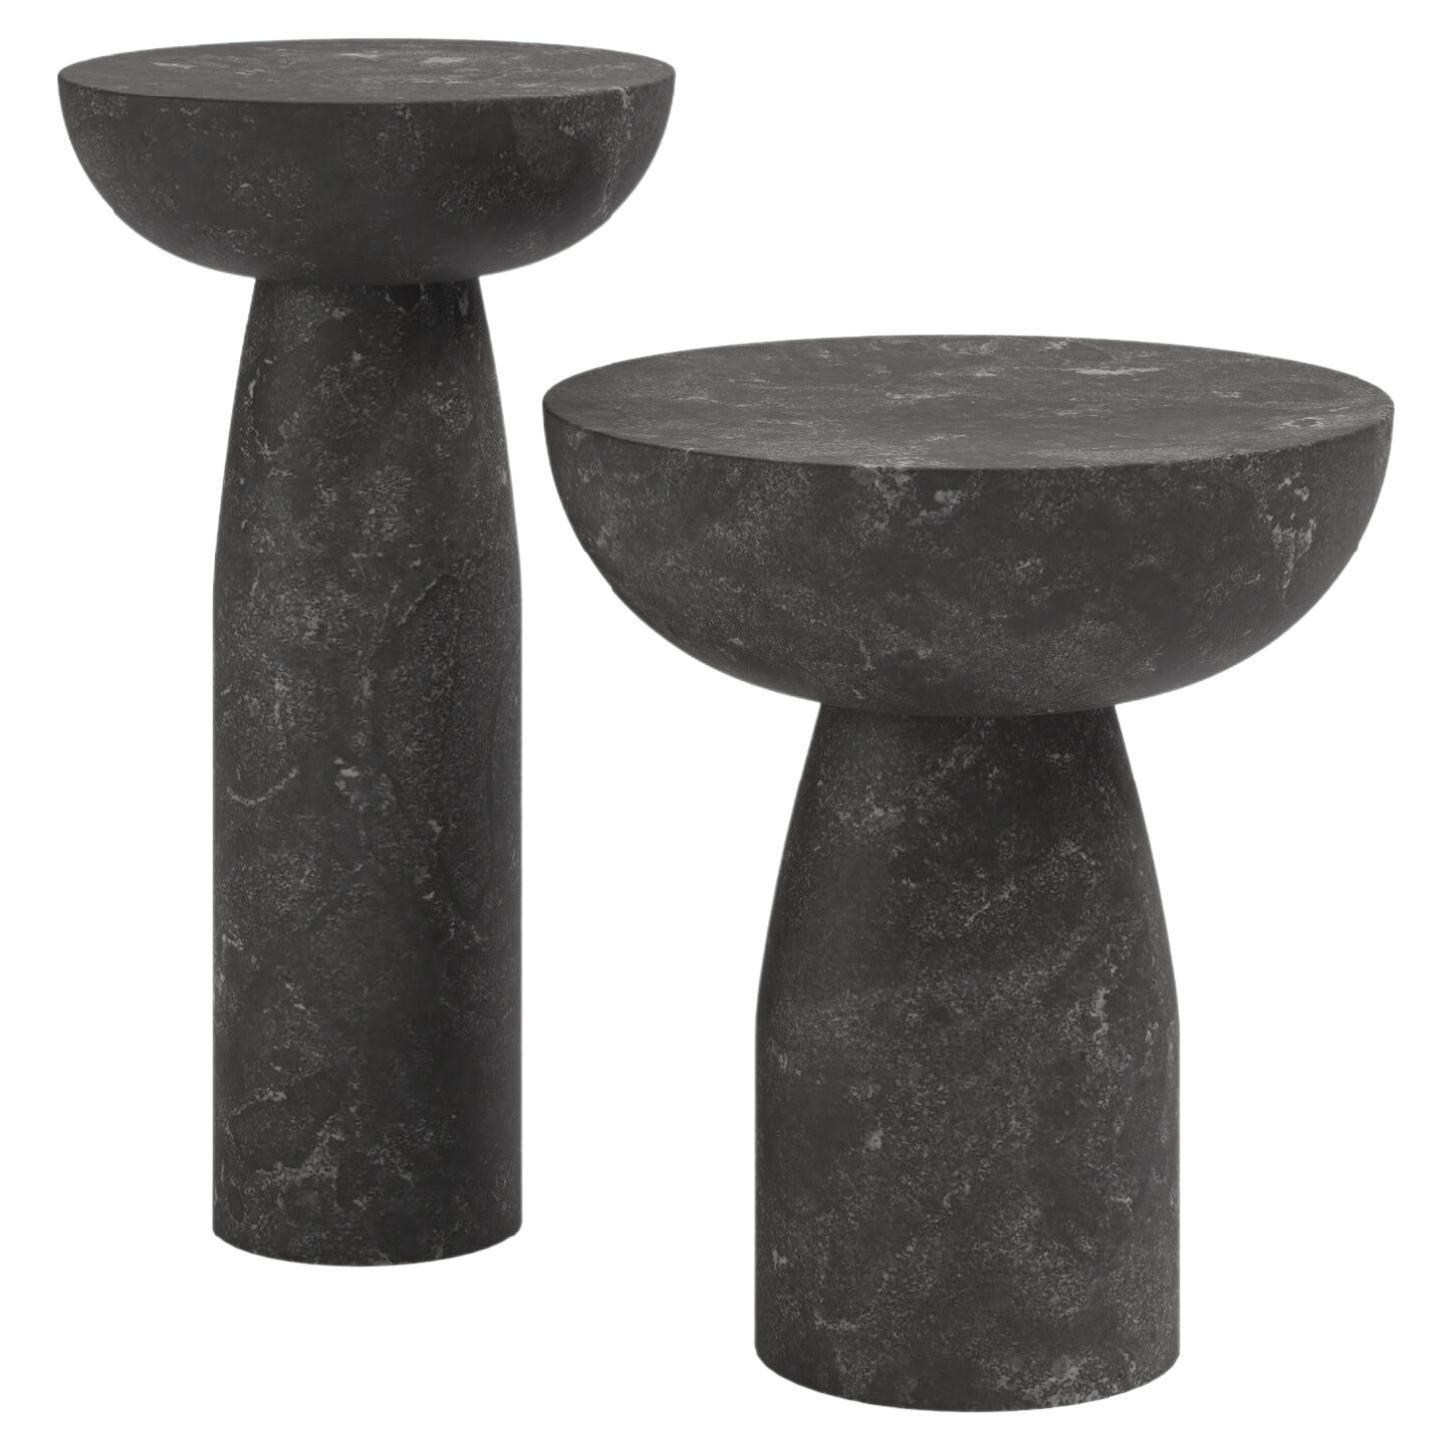 FORM(LA) Sfera Round Side Table 14”L x 14”W x 26”H Nero Petite Granite For Sale